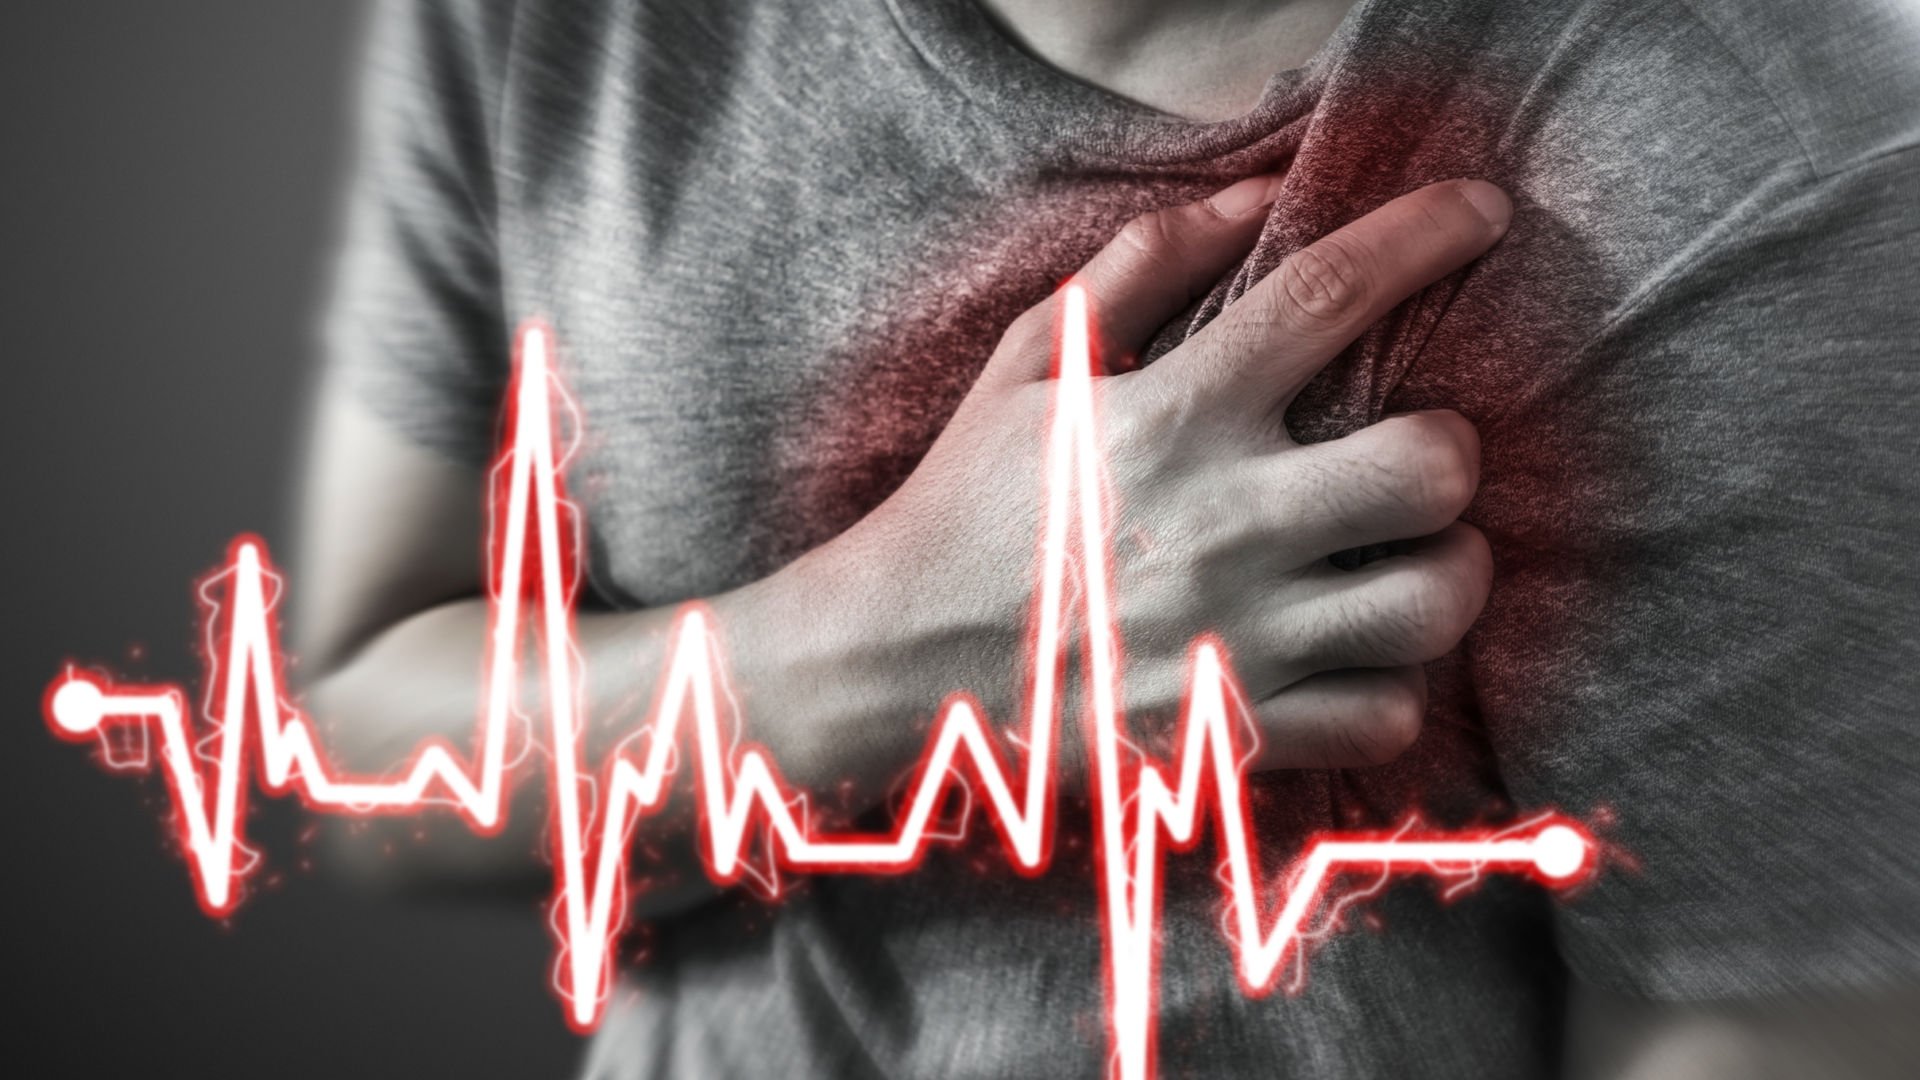 Endişe ve üzüntü kalp krizi nedeni! İşte kalp krizinin belirtileri - Haberler